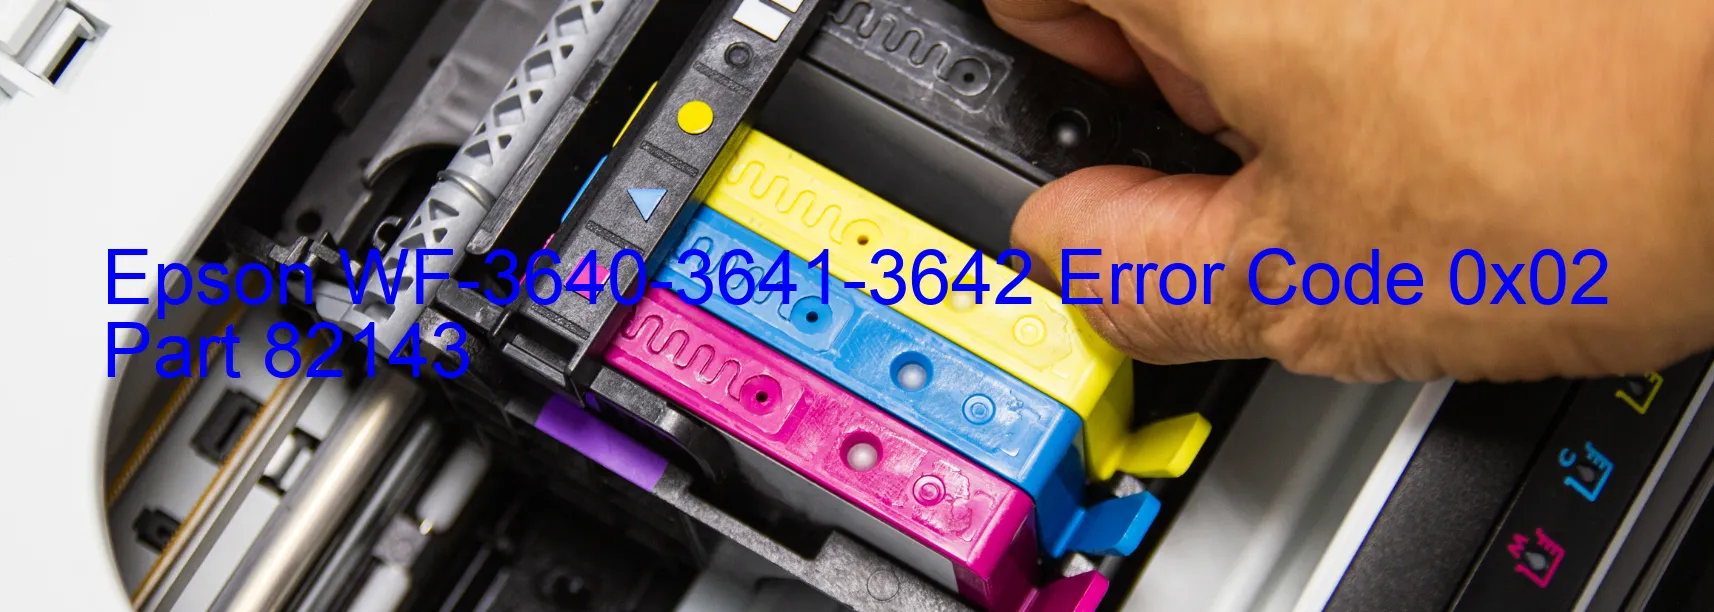 Epson WF-3640-3641-3642 Fehlercode 0x02